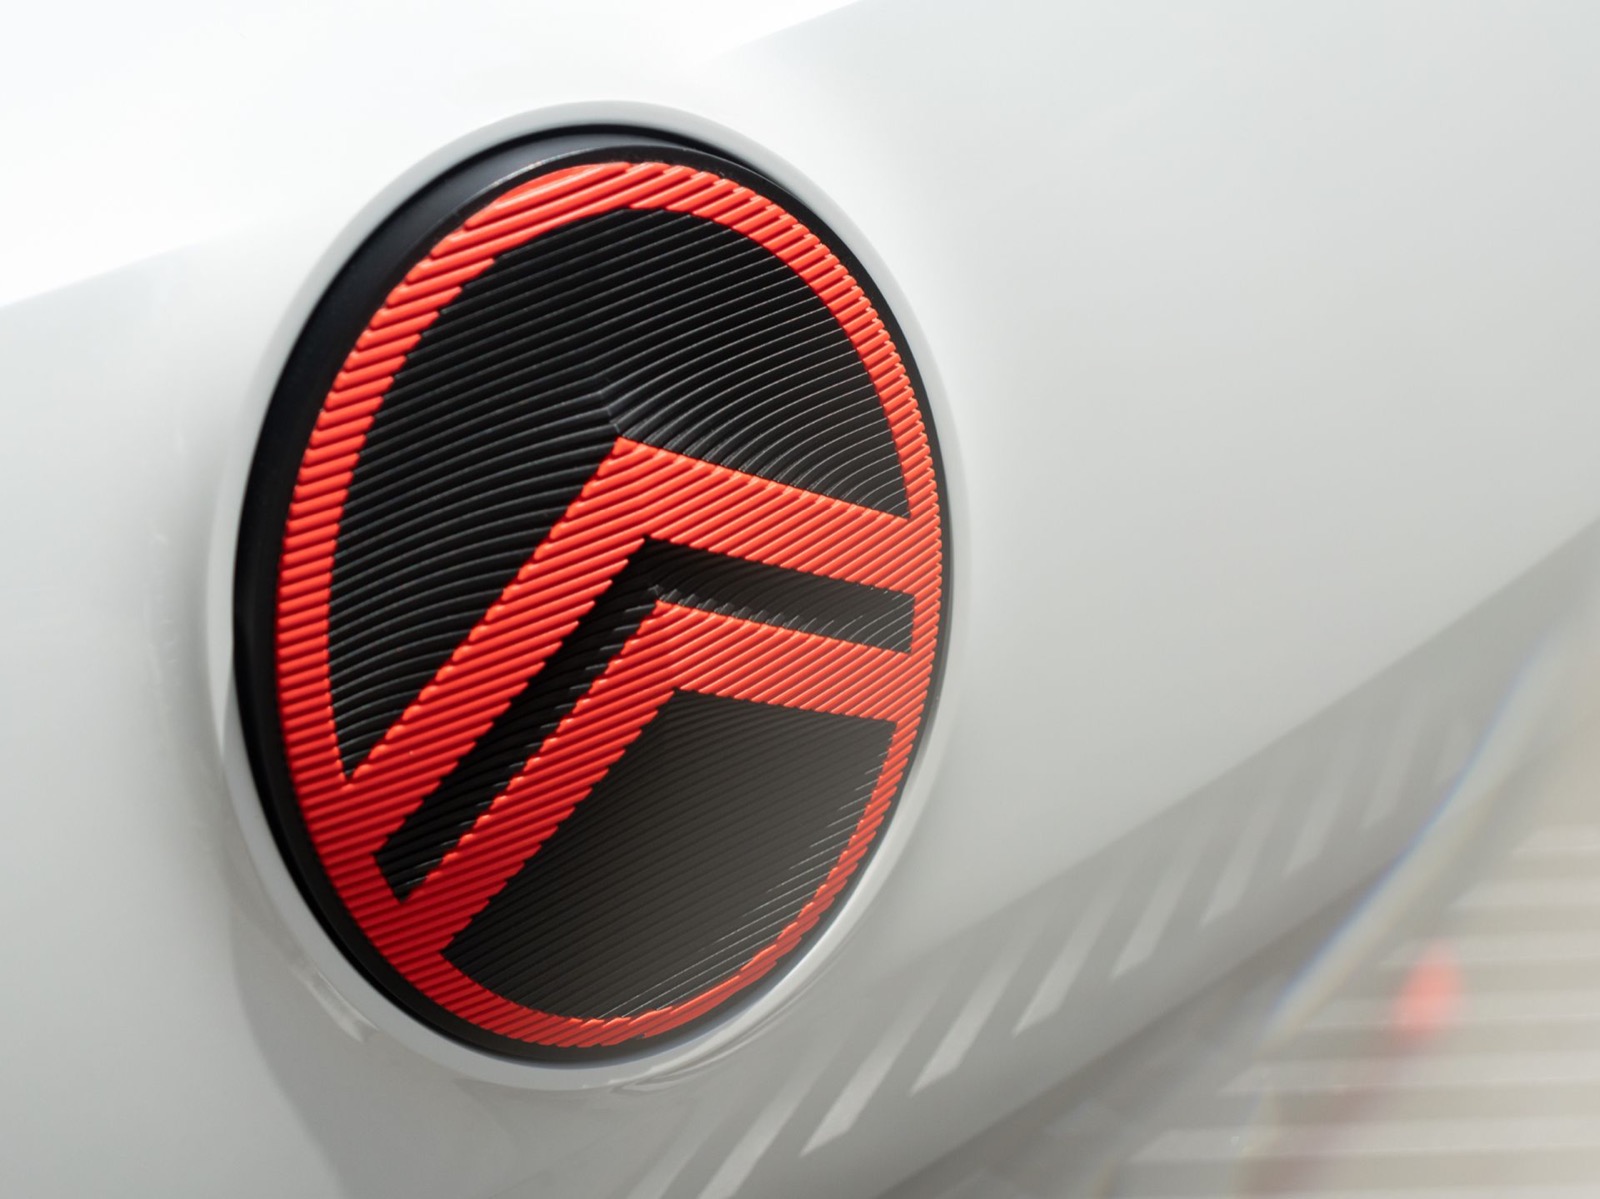 nieuw logo Citroën